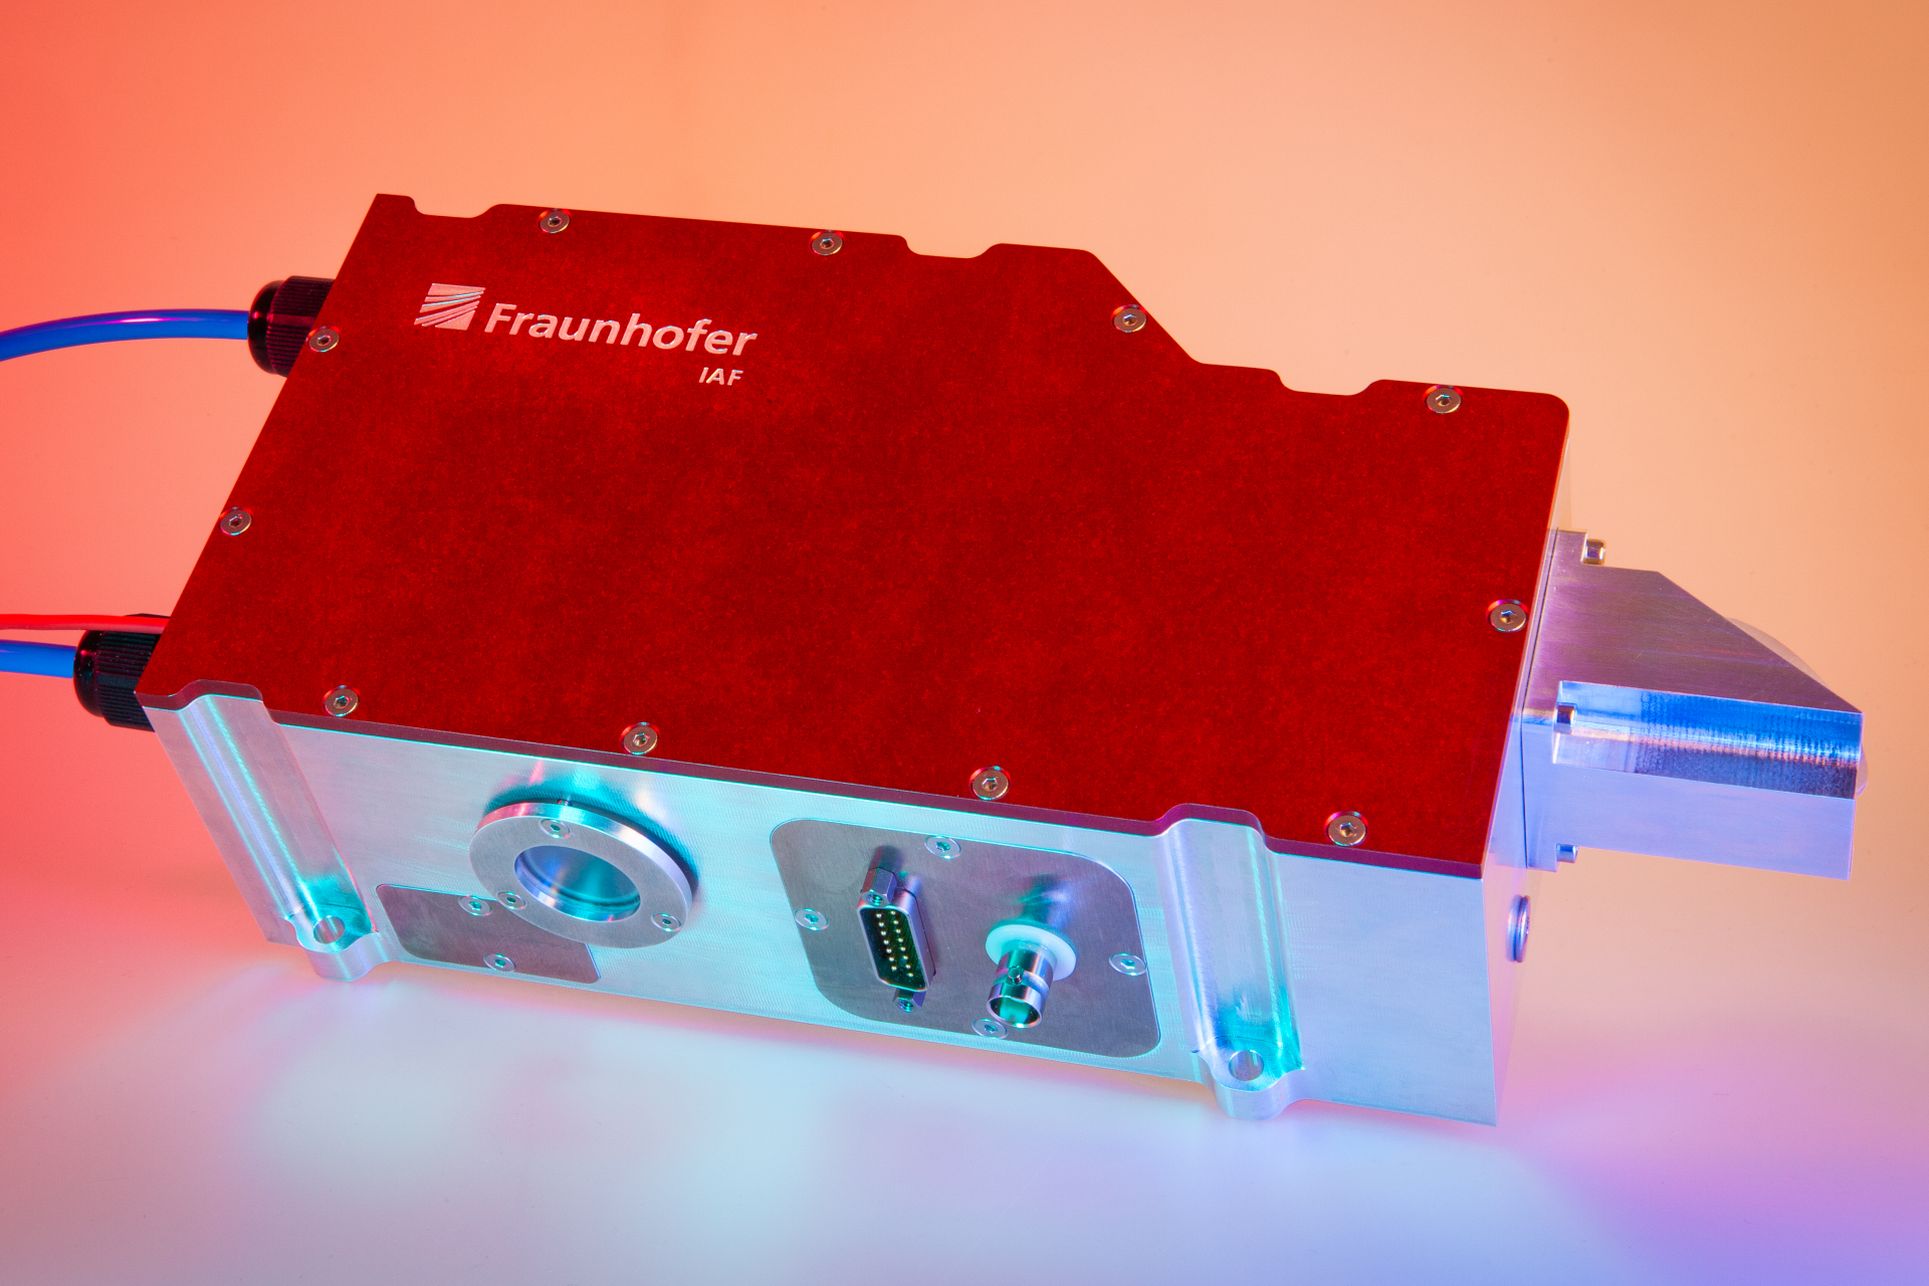 Einmodiges Halbleiter-Scheibenlaser-Modul mit bis zu 2,4 W Ausgangsleistung für den Frequenzbereich zwischen 1,9 und 2,5 µm, entwickelt als Pumpquelle für Quantenfrequenzkonverter, © Fraunhofer IAF